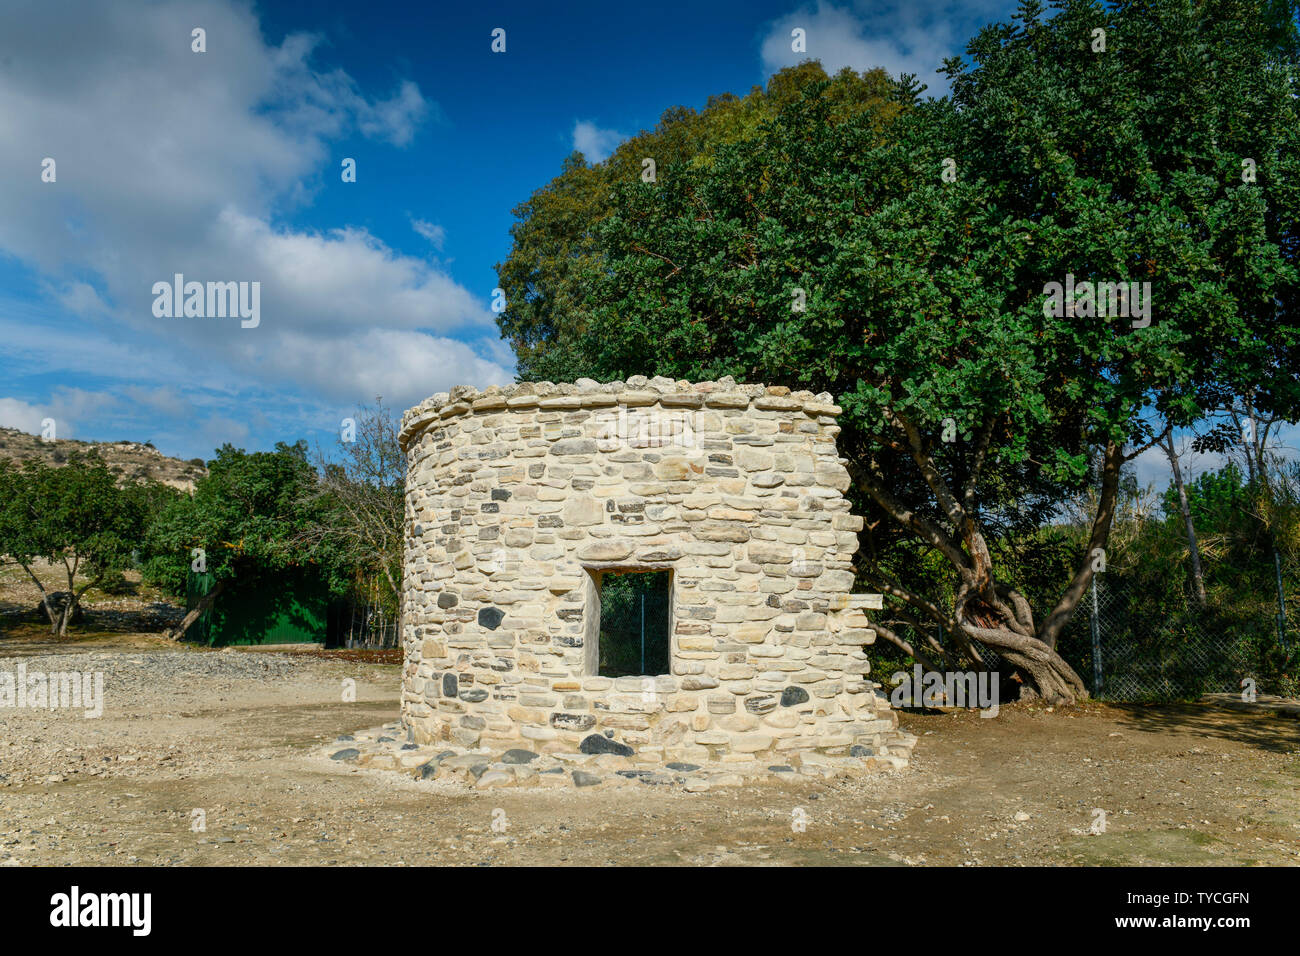 Rekonstruktion Nachbau, Steinzeitliche Ausgrabungsstaette Chirokitia, Zypern Foto de stock